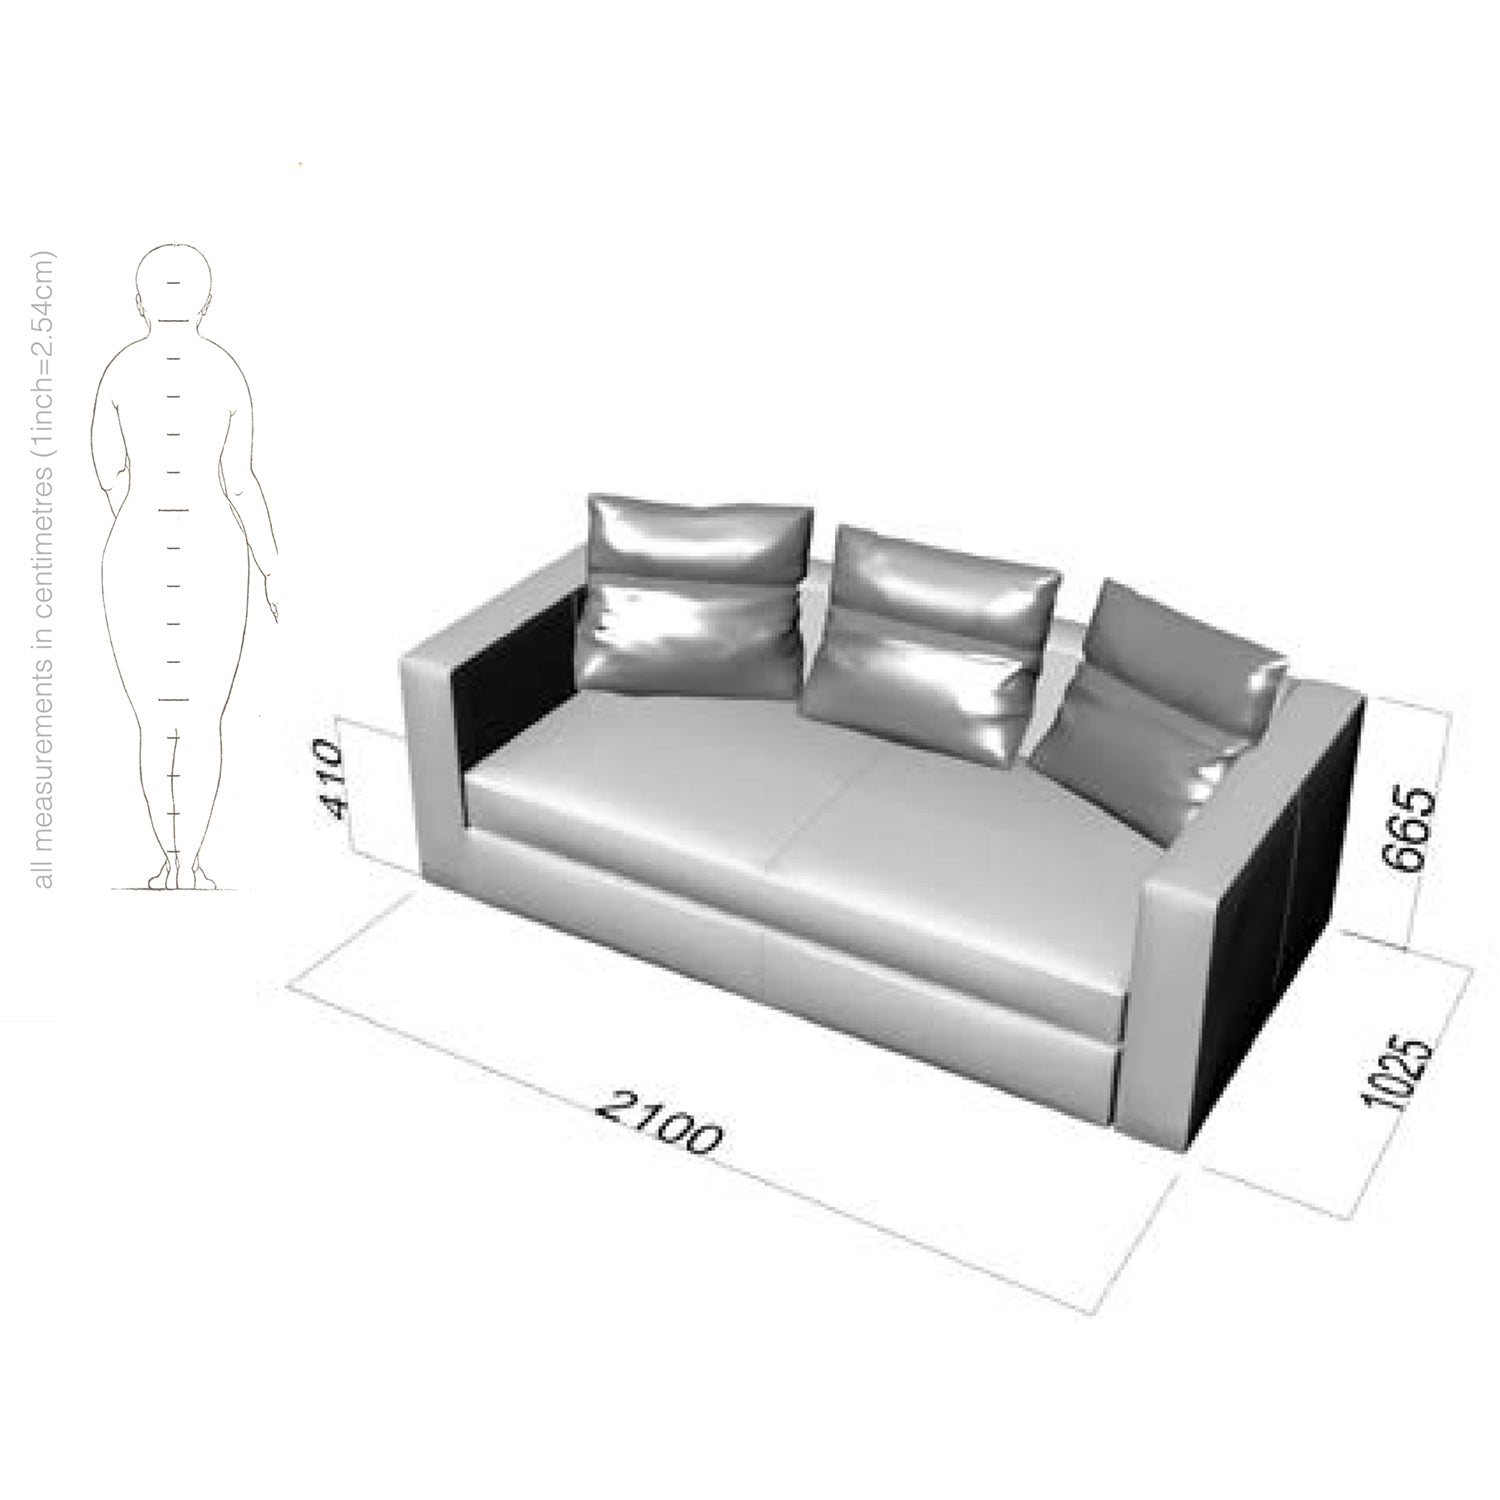 rafael series sofa dimensions and drawing